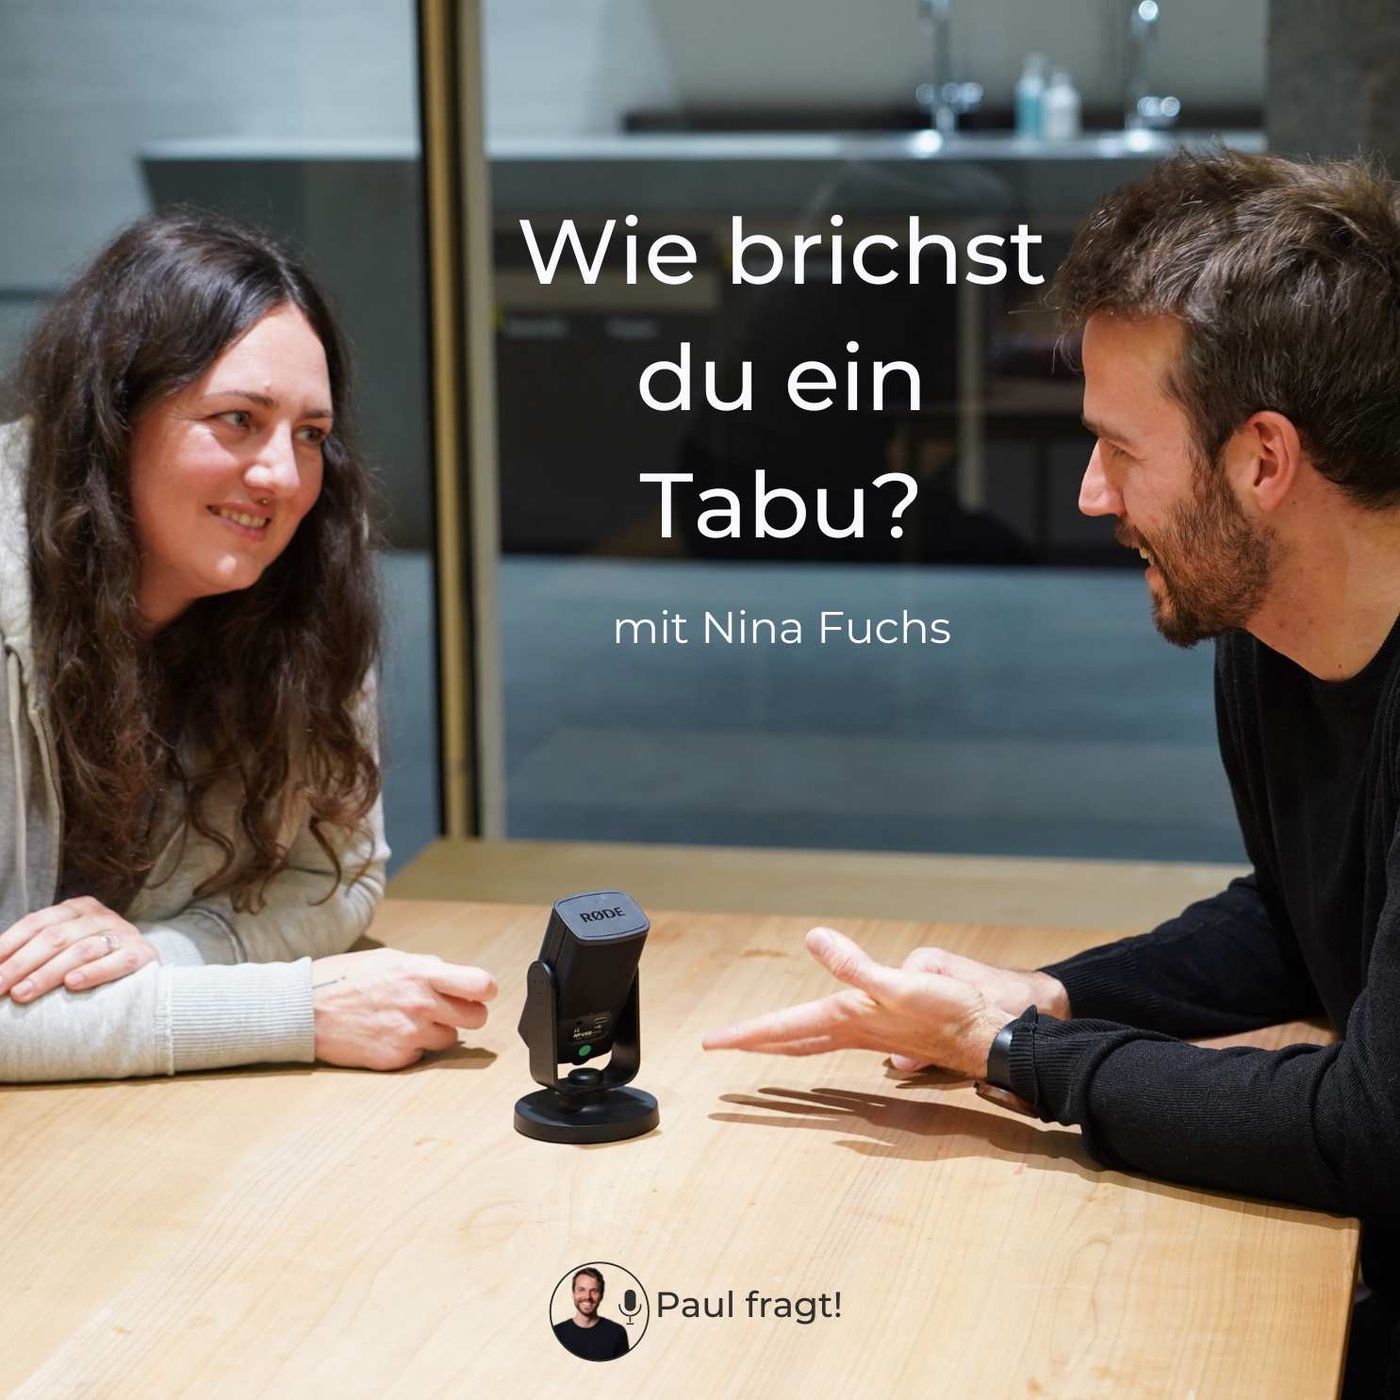 Nina Fuchs: Wie brichst du ein Tabu?